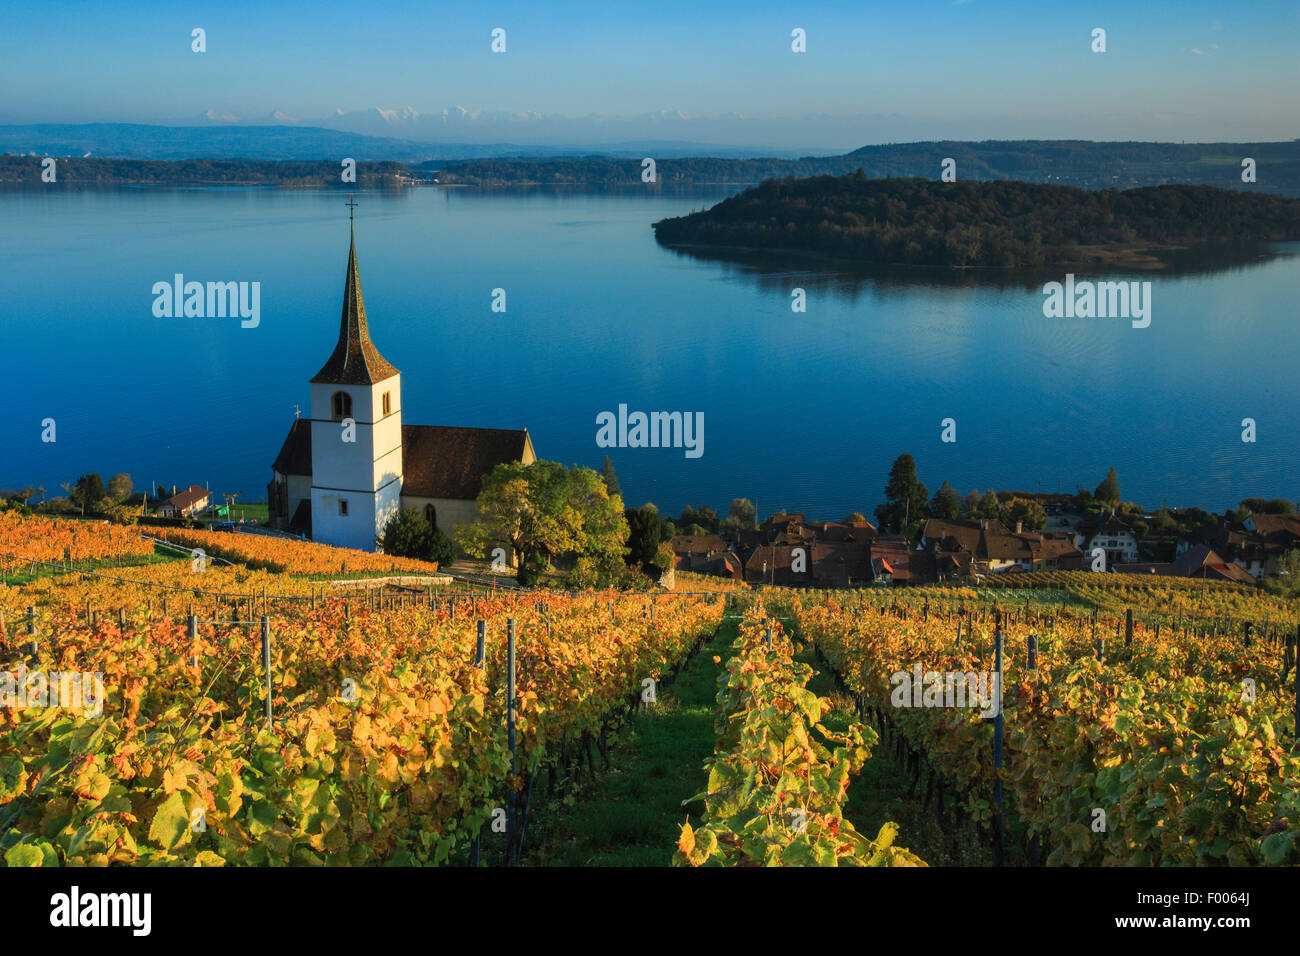 Ligerz am Bielersee, Schweiz, Drei-gesehen-Land Stockfotografie - Alamy